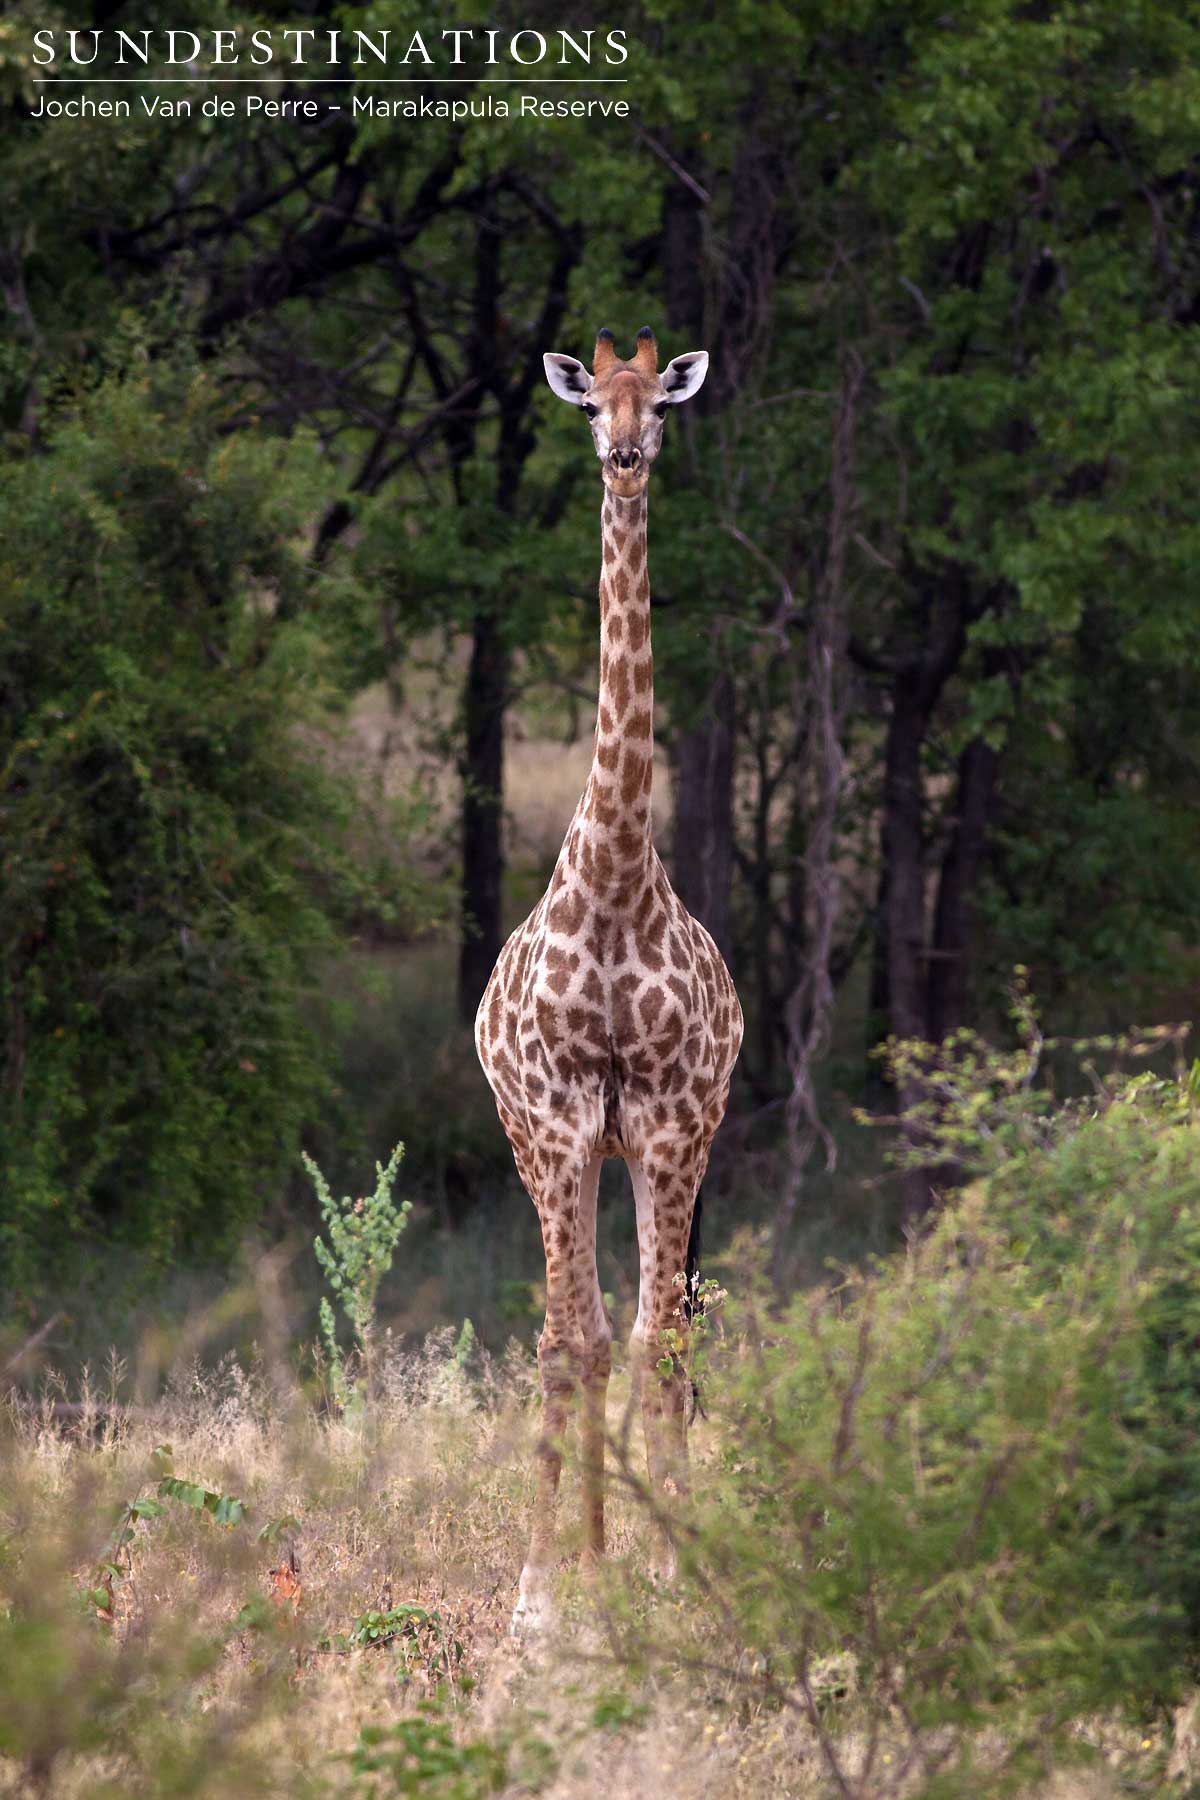 Standing tall, a lone giraffe